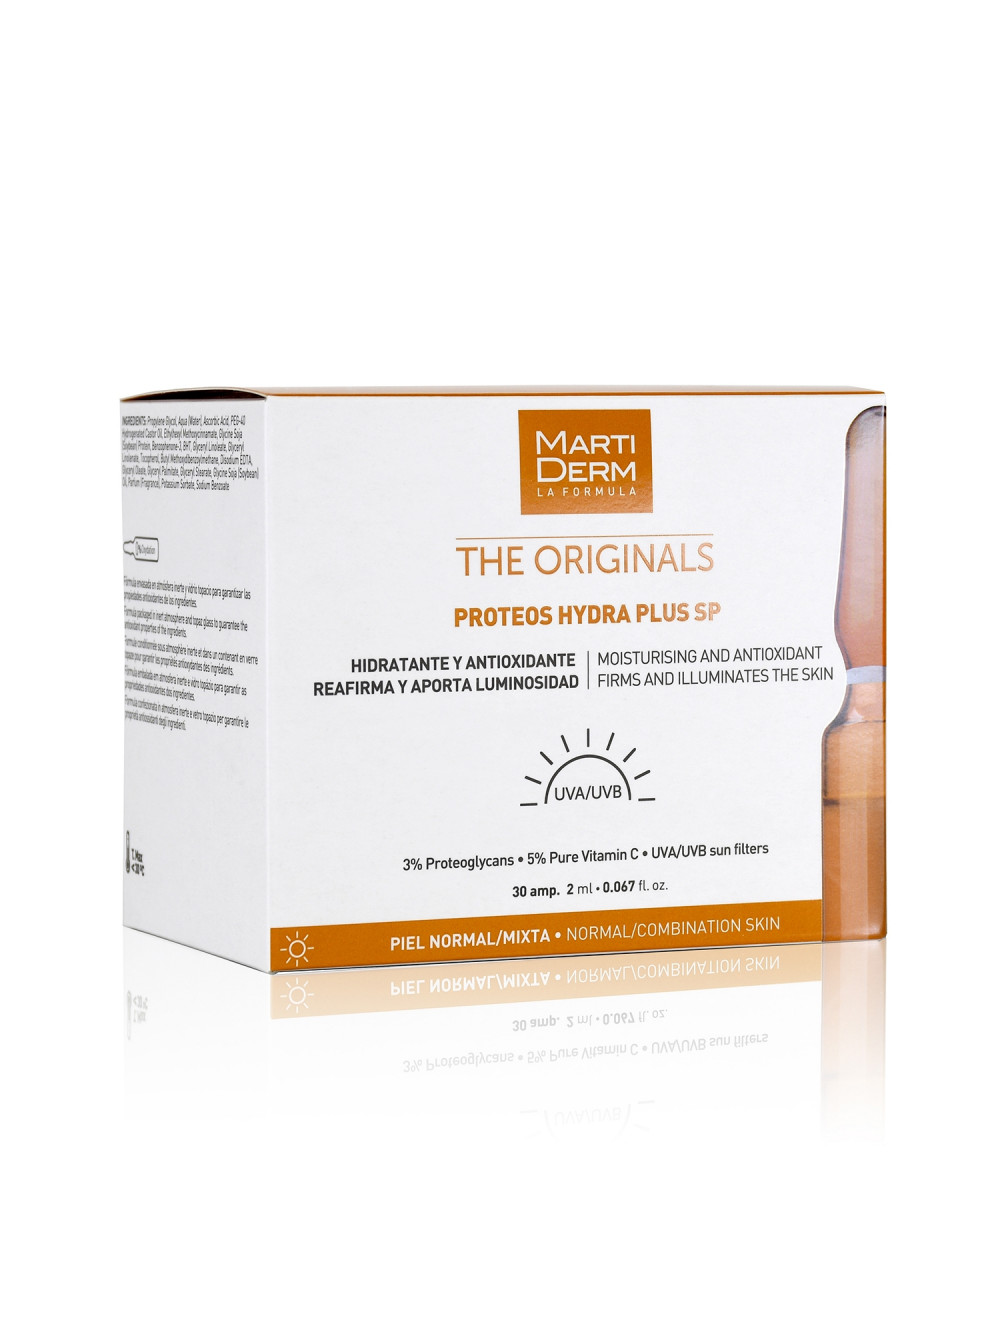 Сыворотка-уход для увлажнения и защиты кожи в ампулах Proteos Hydra Plus SP, The Originals, MartiDerm